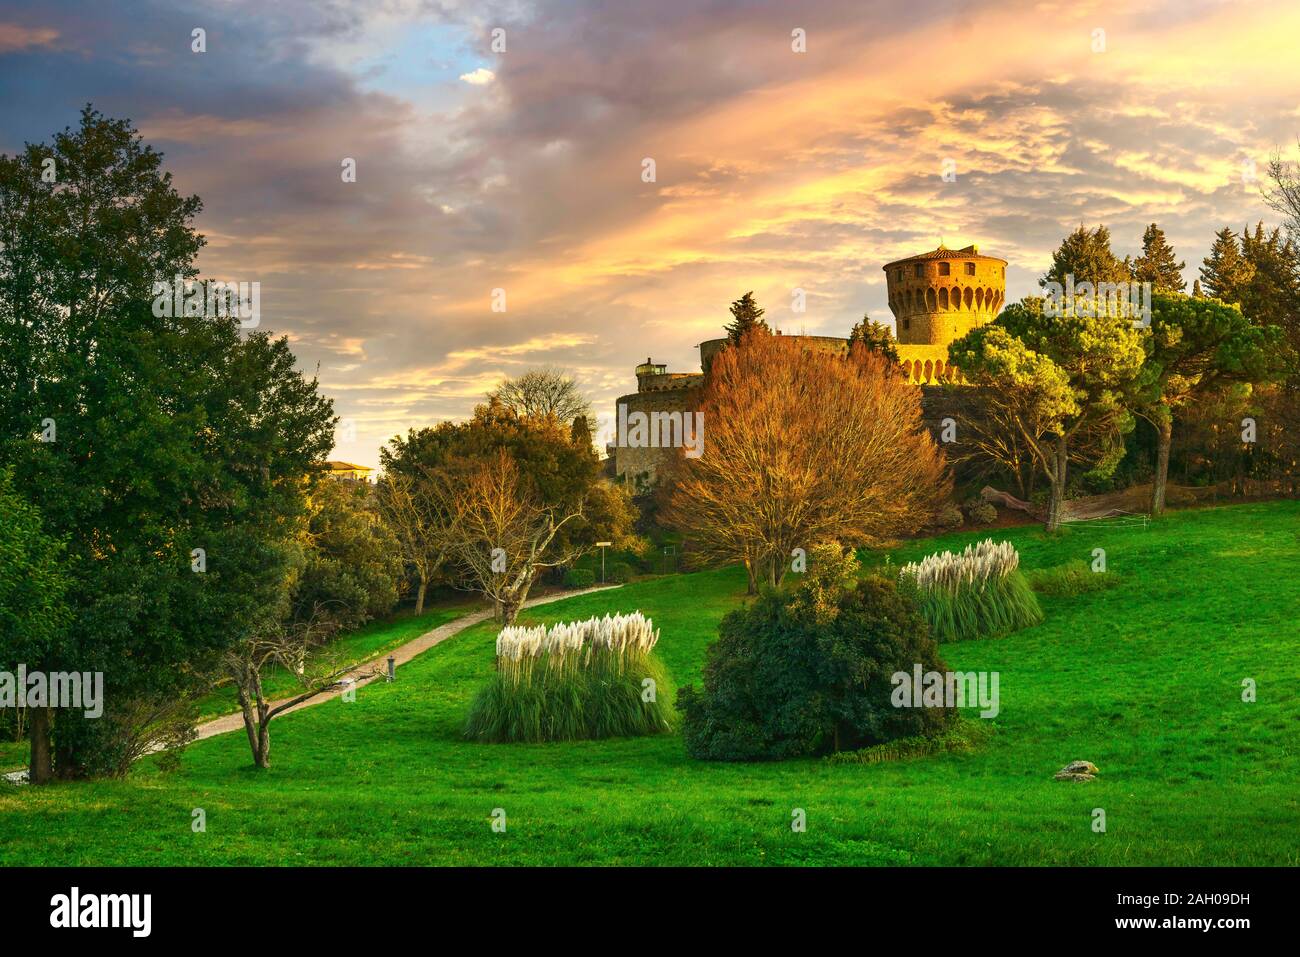 La Toscane, Volterra, ville du sud de la ville médiévale et le parc de la Forteresse Medicea. L'Italie, l'Europe Banque D'Images